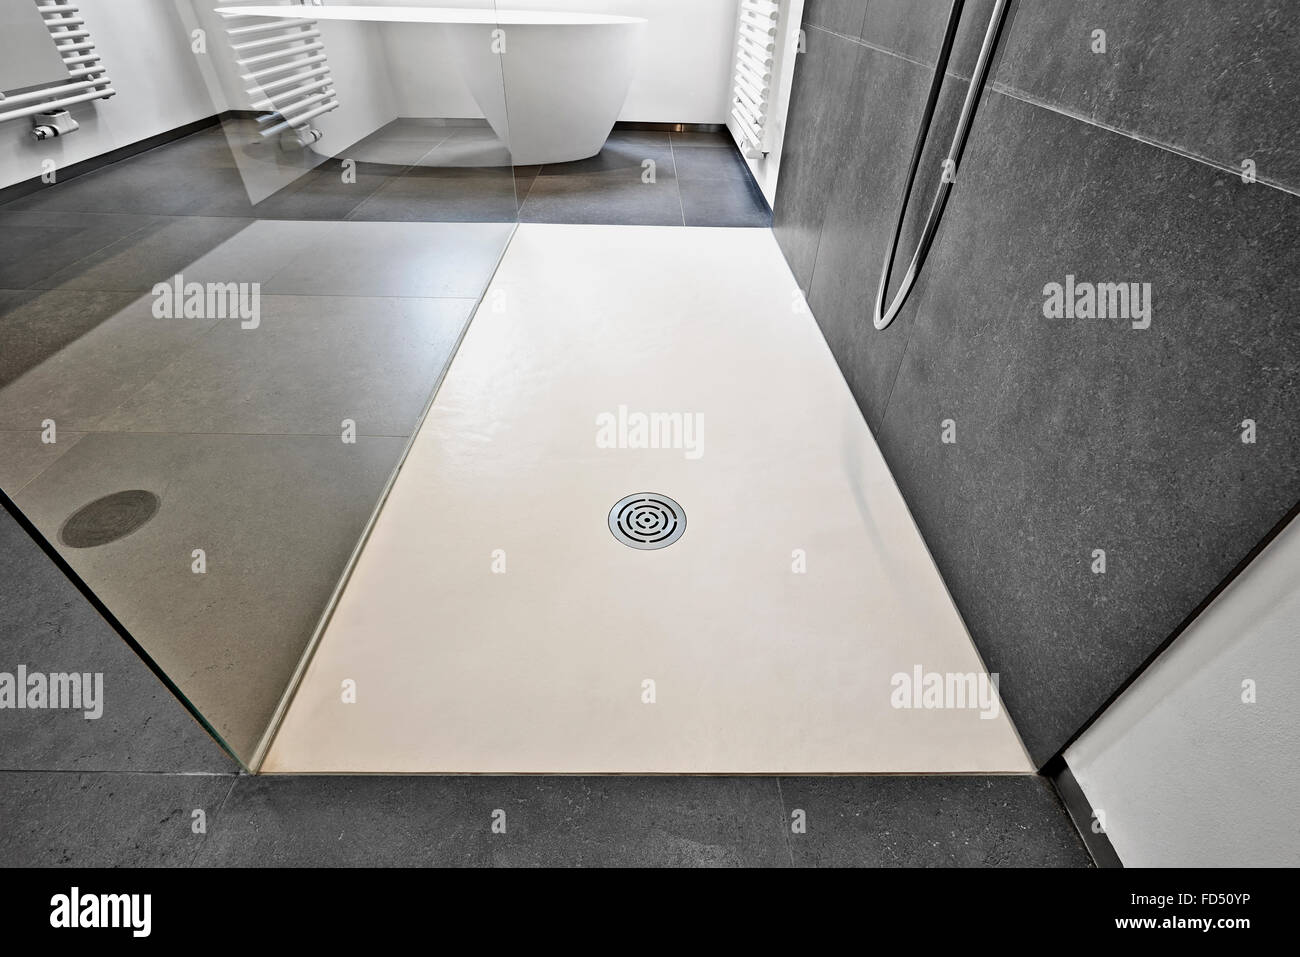 Corian-Boden und Abfluss von modernen Dusche in Luxus-Badezimmer  Stockfotografie - Alamy